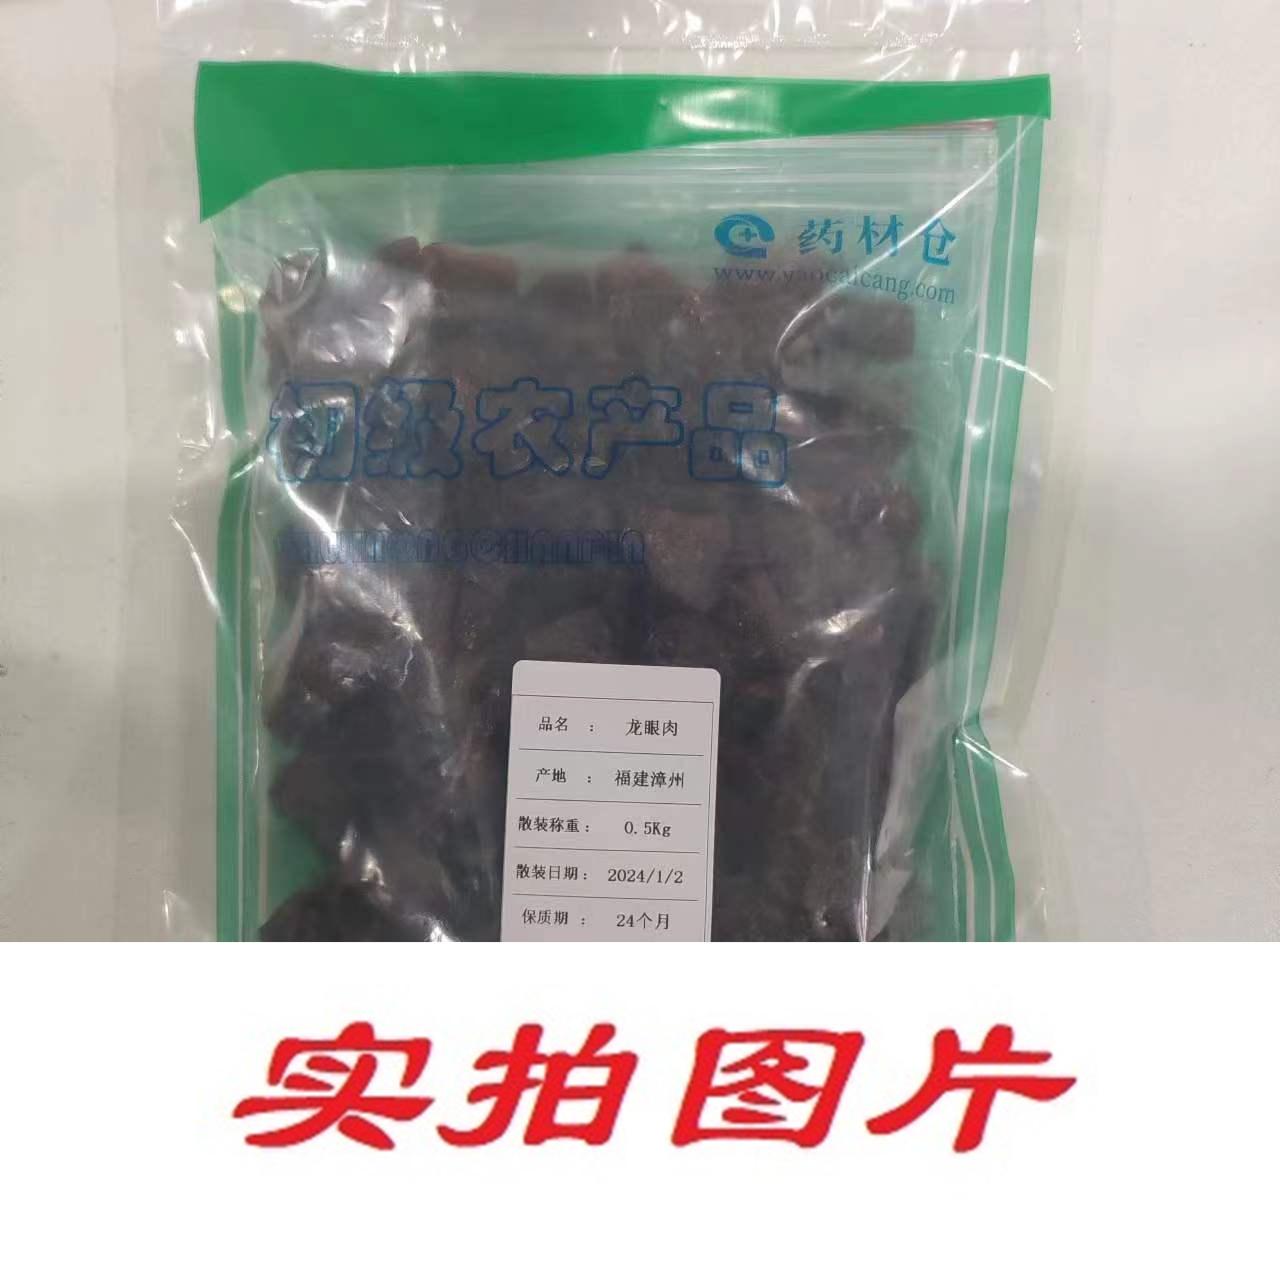 【】龙眼肉0.5kg-农副产品